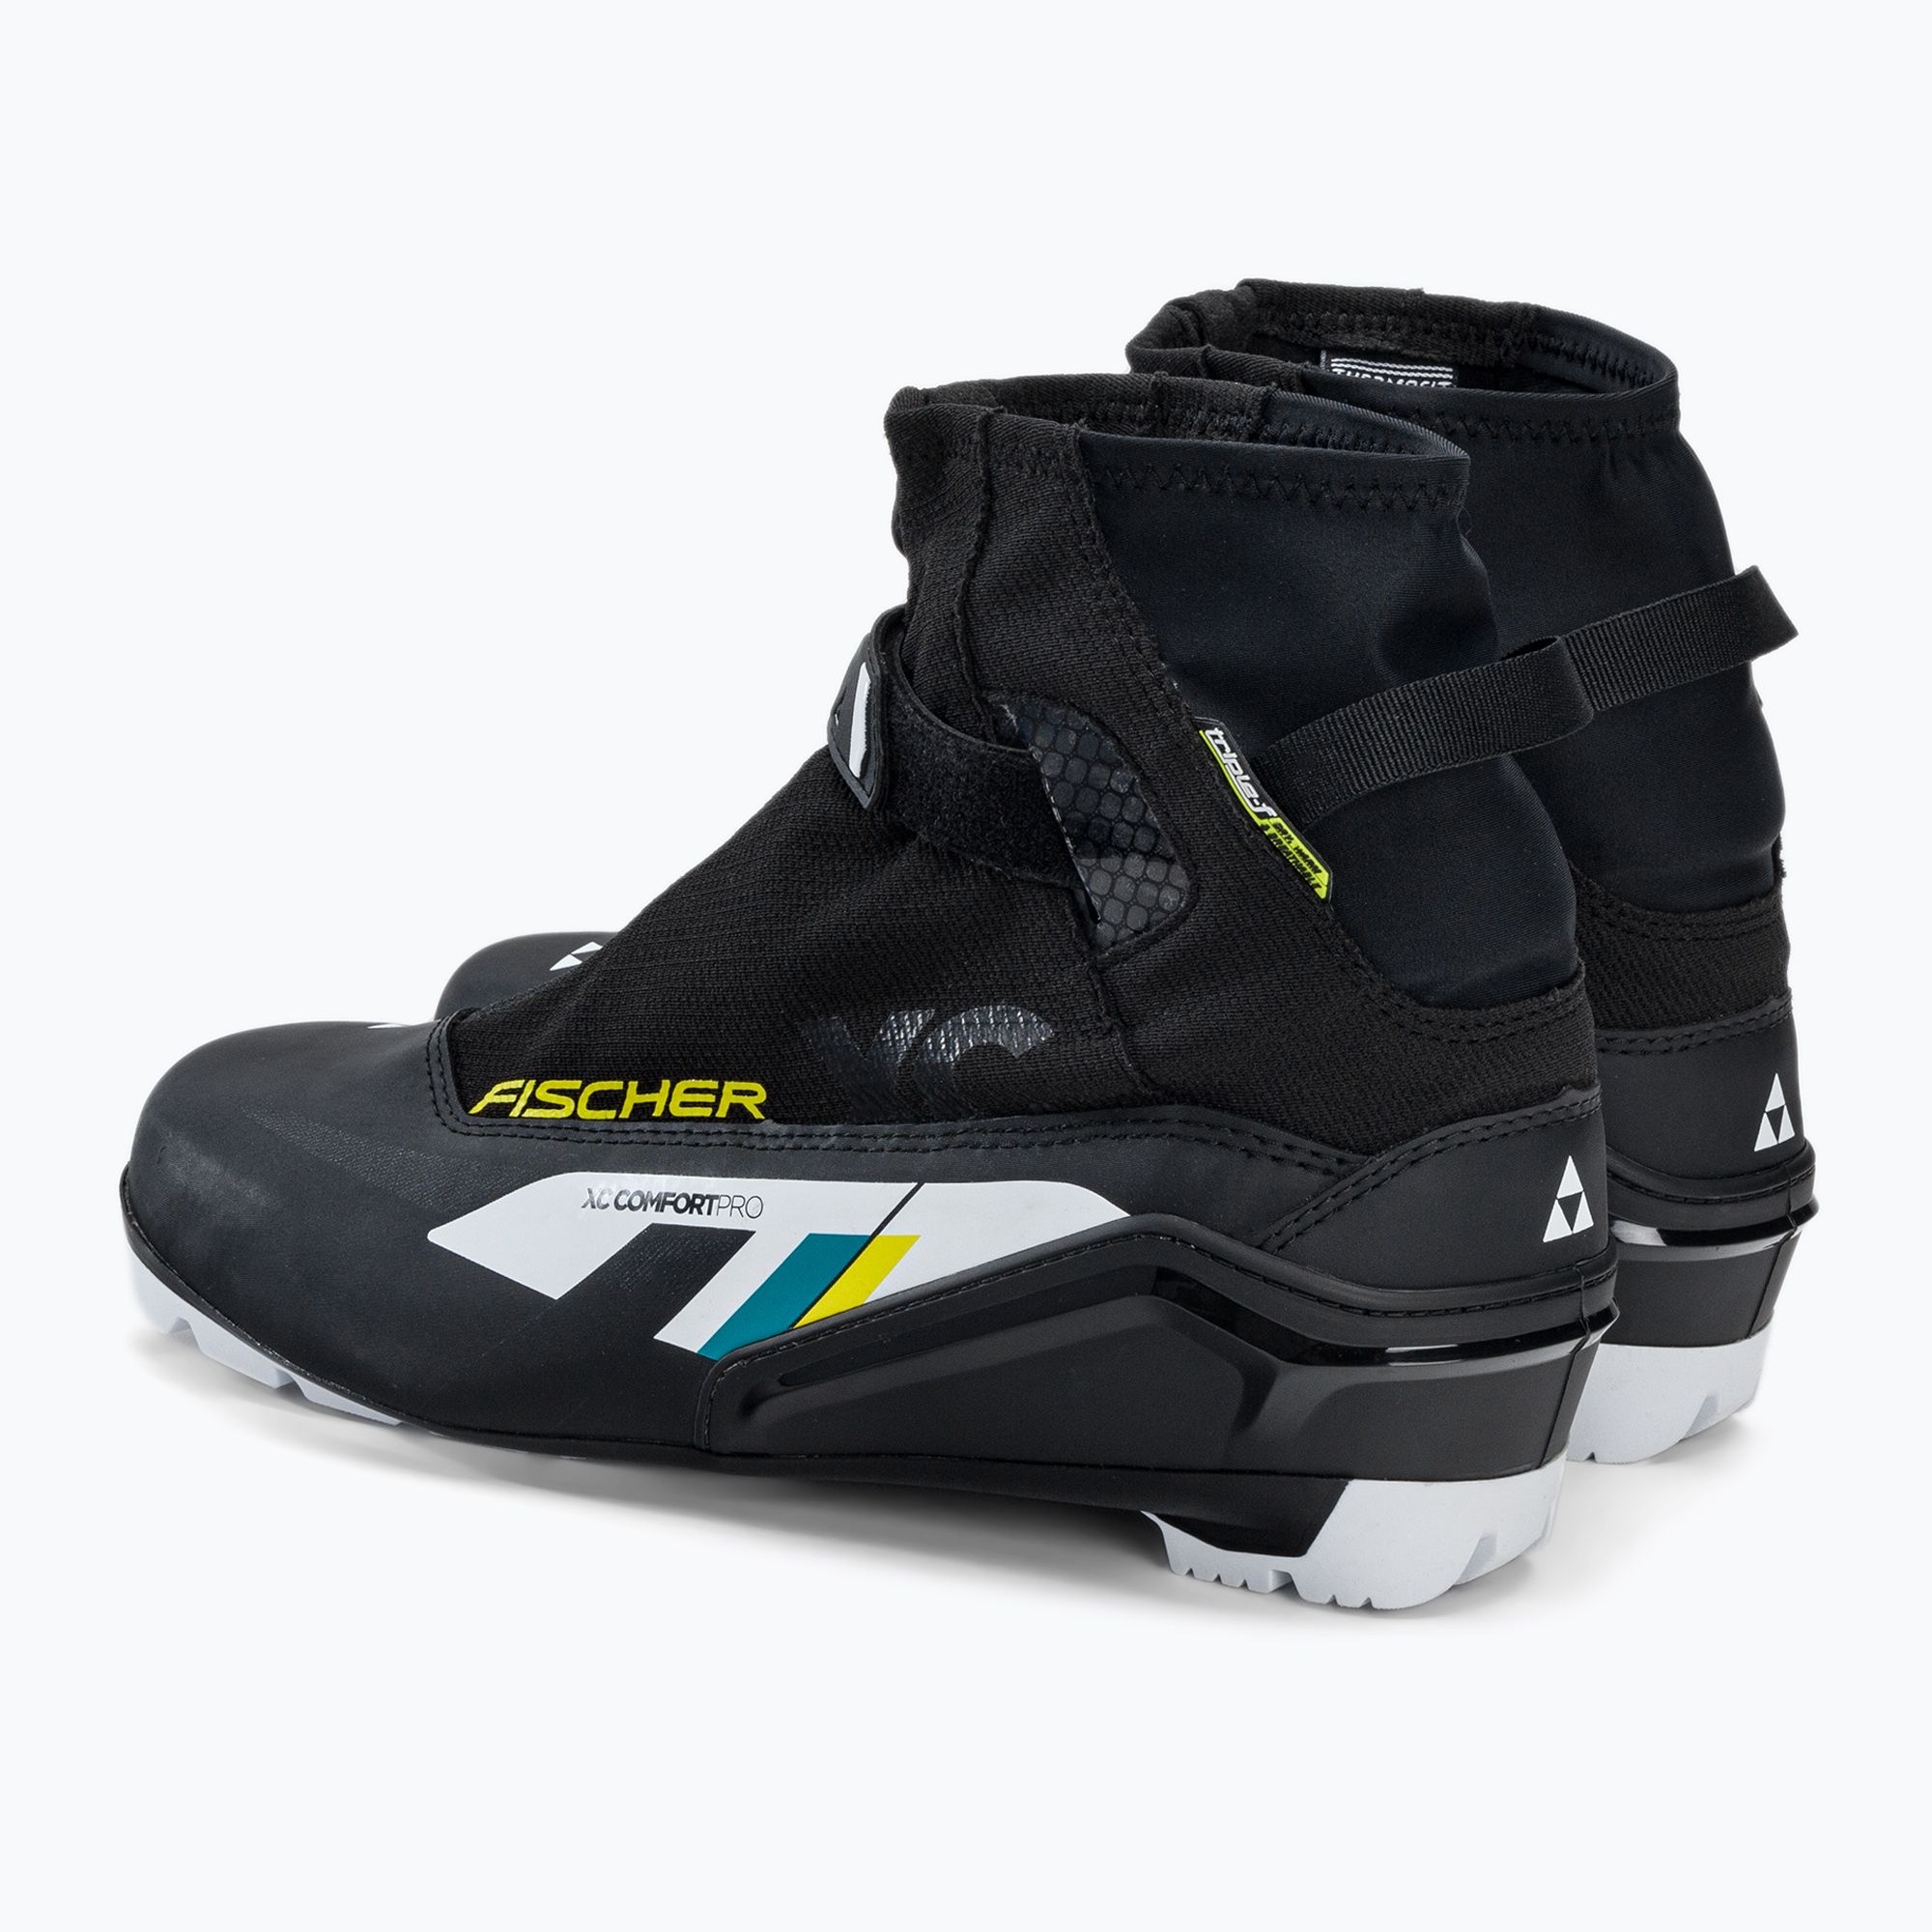 Buty do nart biegowych Fischer XC Comfort Pro black/yellow zdjęcie nr 3